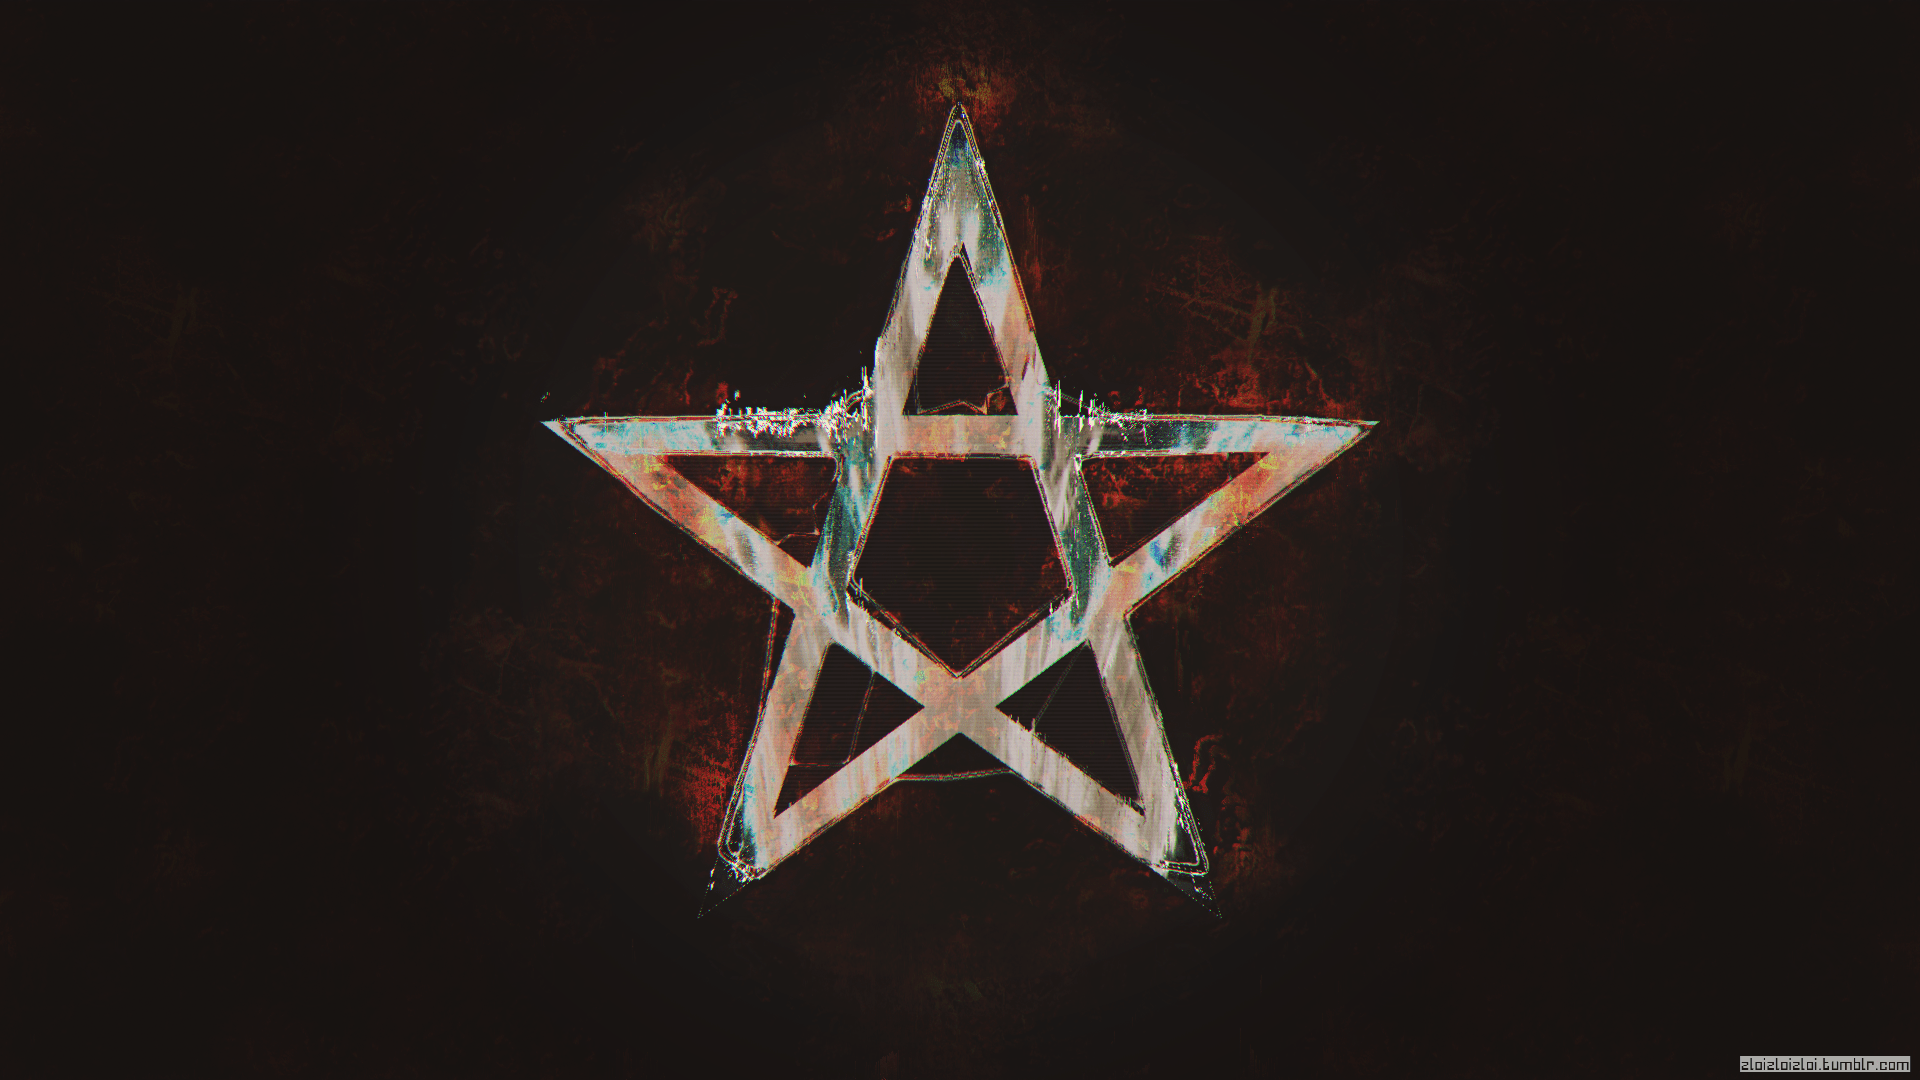 A star symbol in a dark background - Black glitch